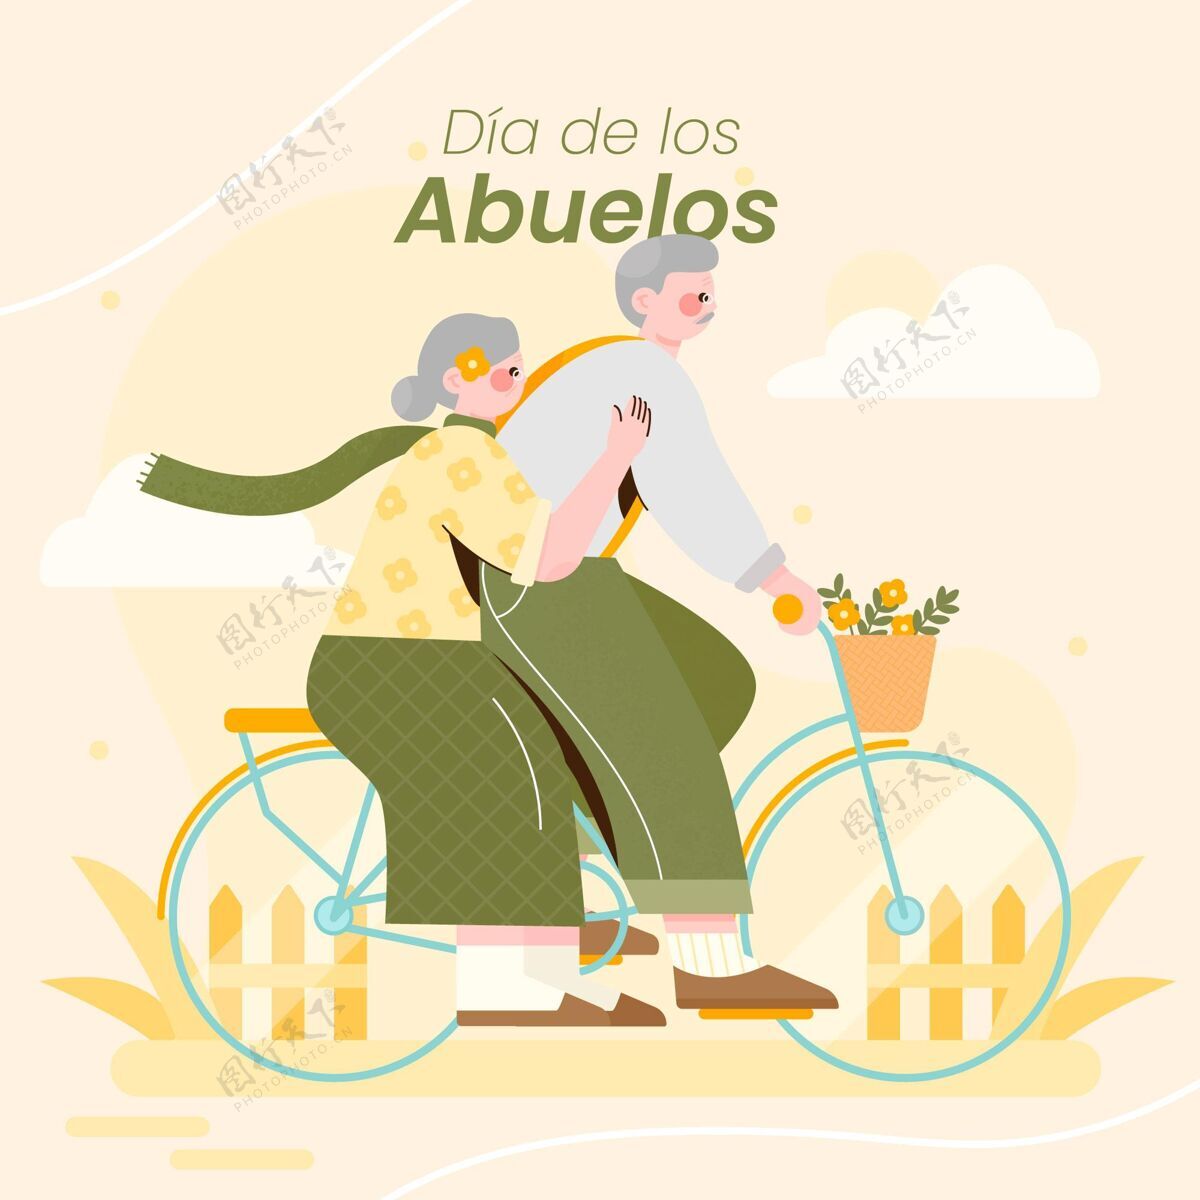 祖父母Diadelosabuelos插图庆祝活动祖母迪亚德洛斯阿布埃洛斯